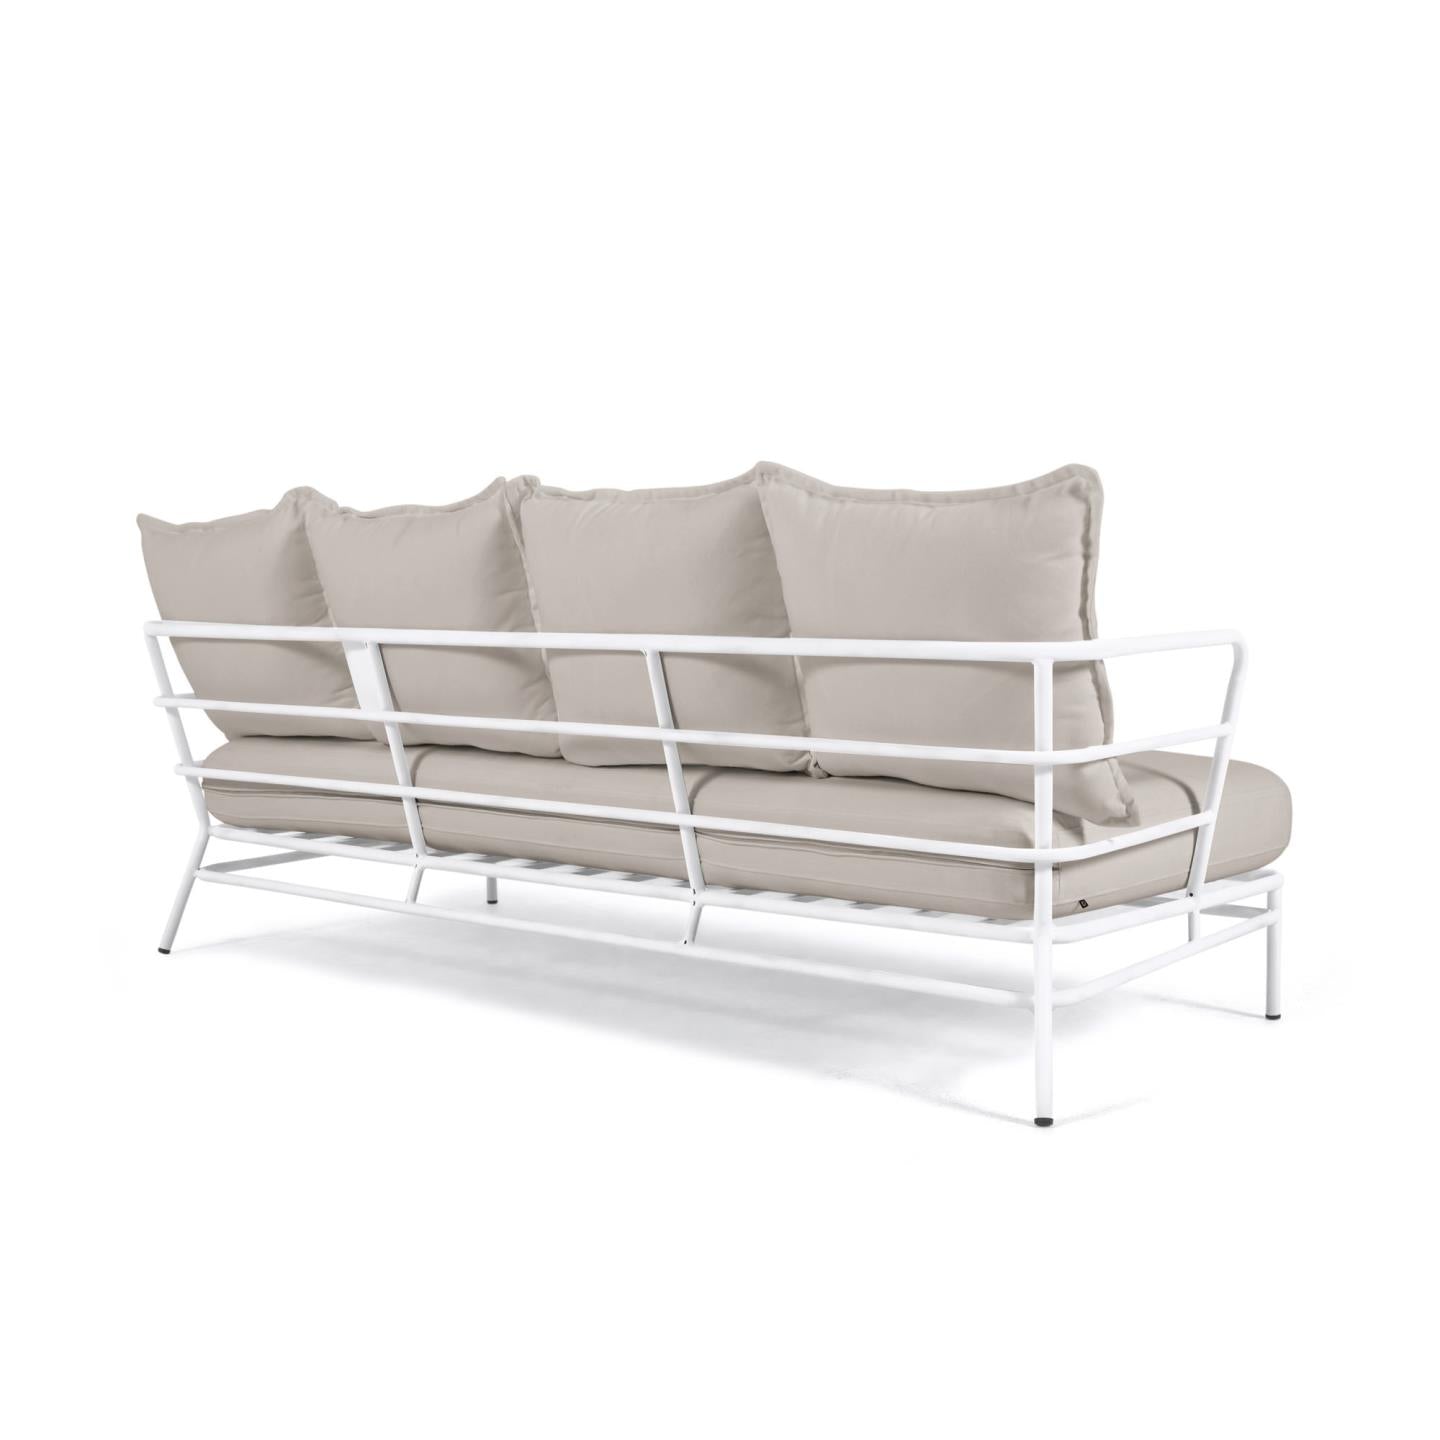 Mareluz 3 személyes kanapé fehér acélból, 197 cm